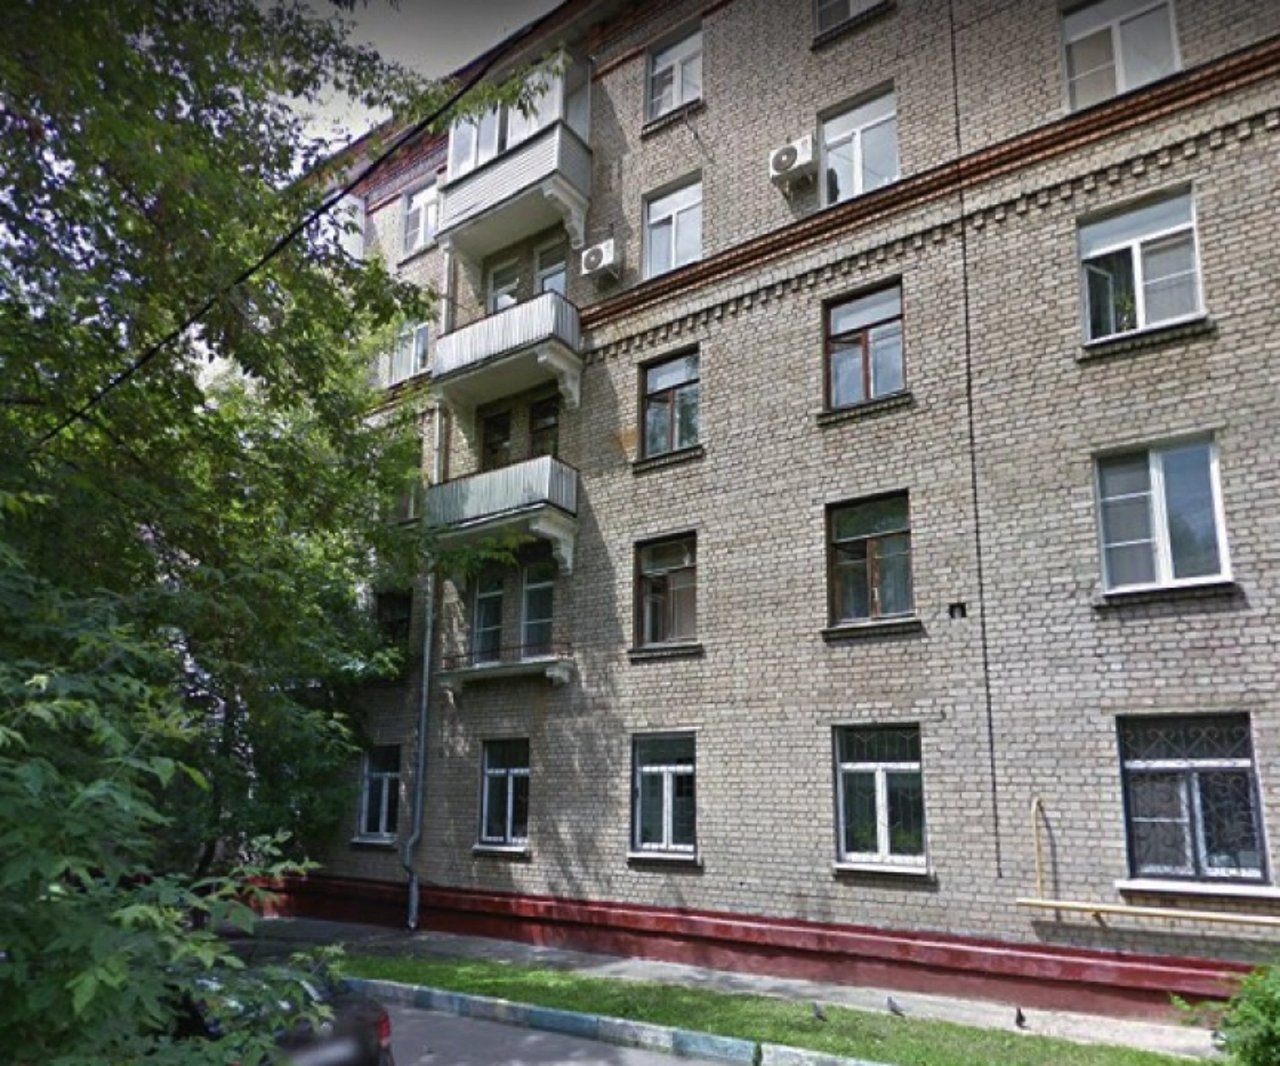 Продам квартиру в Москве по адресу Каширское шоссе, 56к2, площадь 133 квм Недвижимость Москва (Россия)  Дом расположен в сложившемся и благоустроенном районе столицы